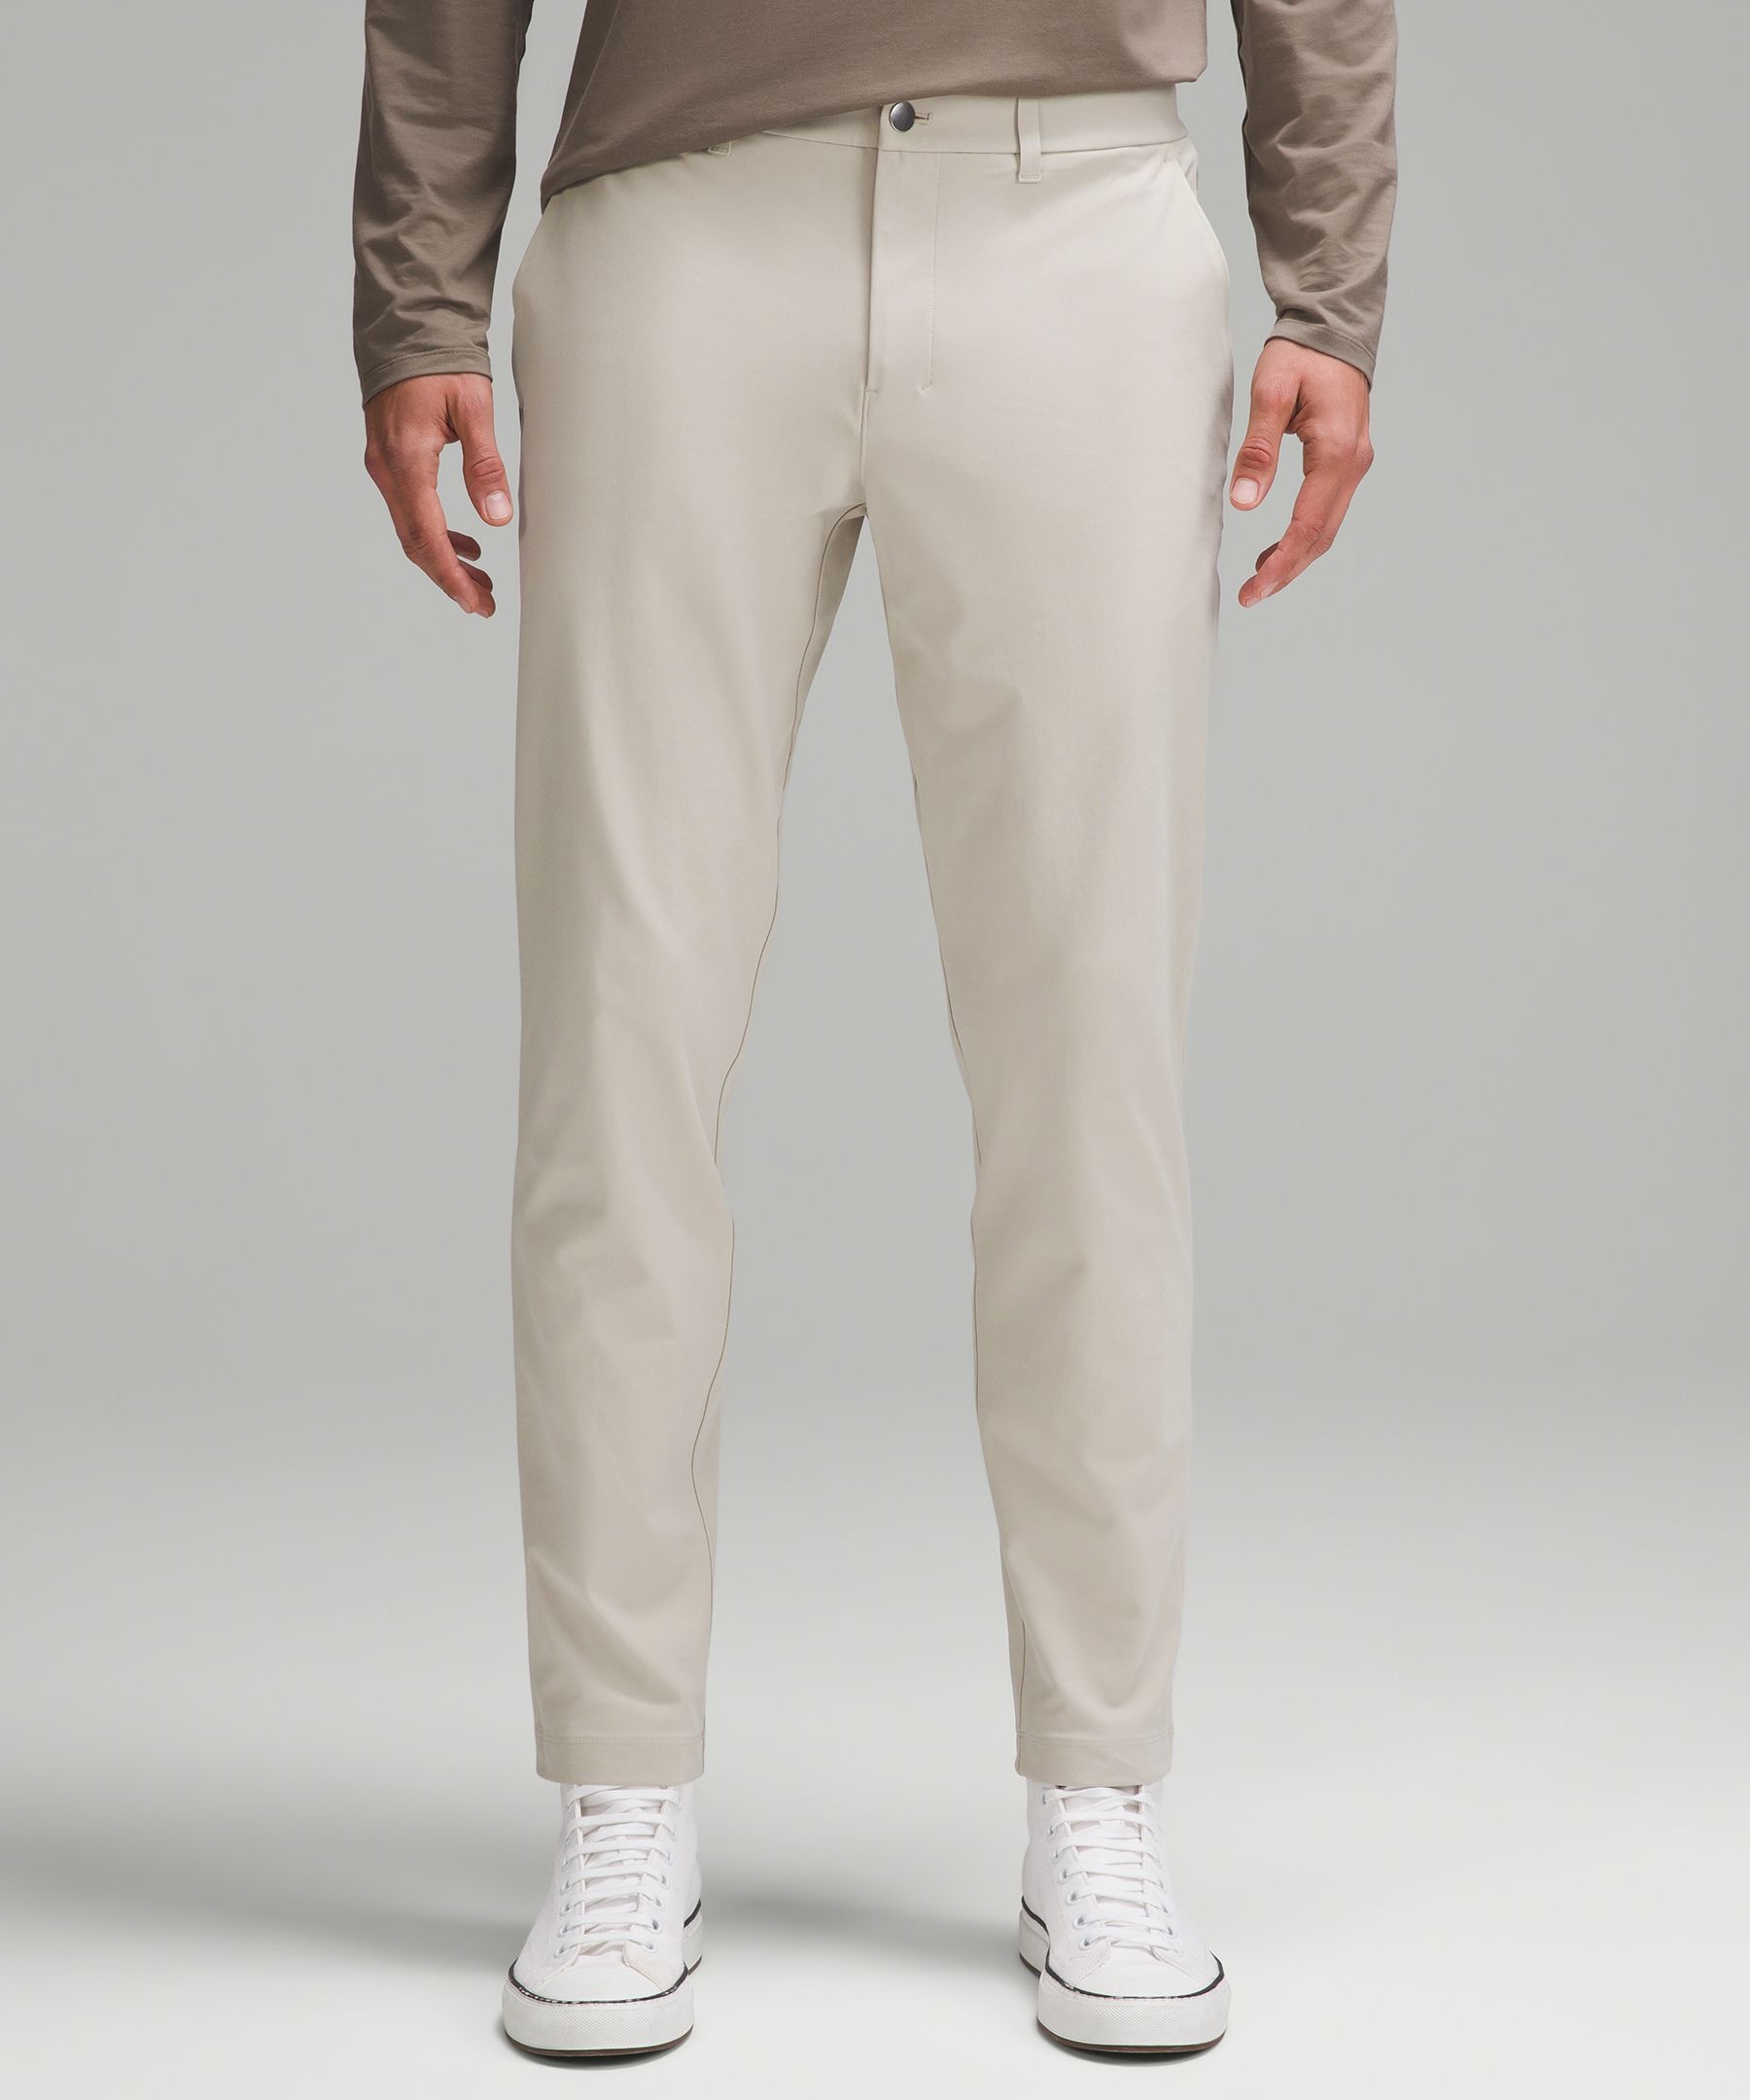 Lululemon Men's Size 31 x 26 ABC Slim-Fit Pants Trousers Warpstreme Bone  LM5AD7S